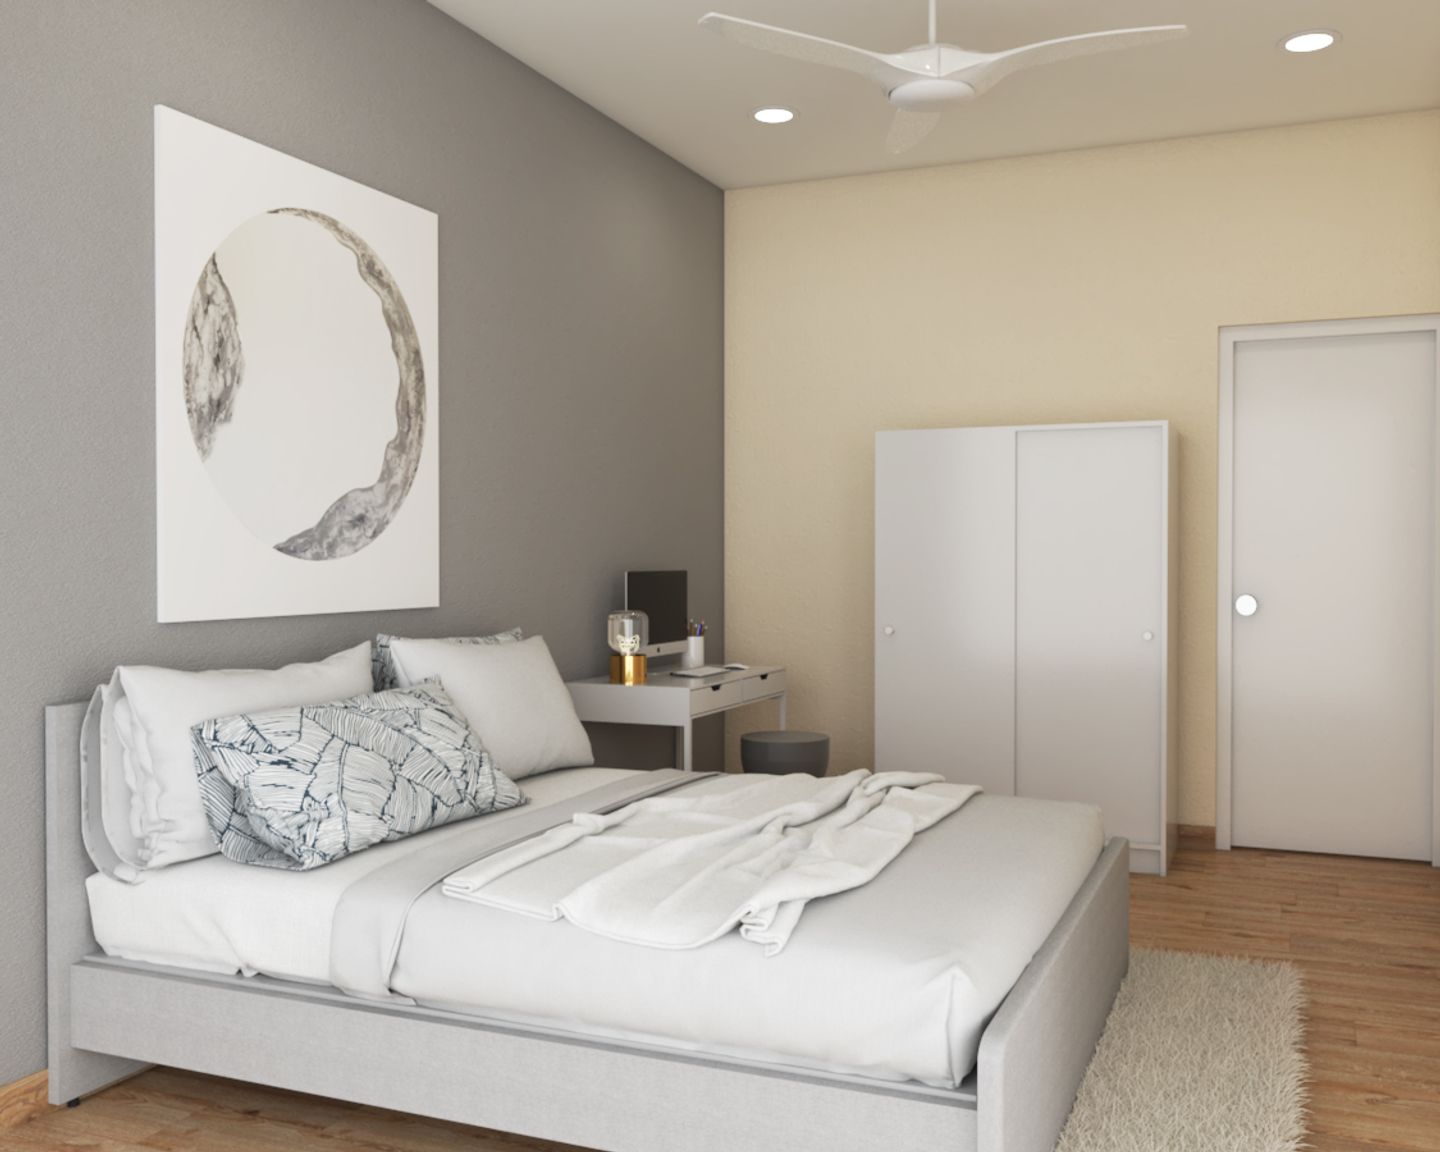 Master Bedroom With Framed Bed - Livspace